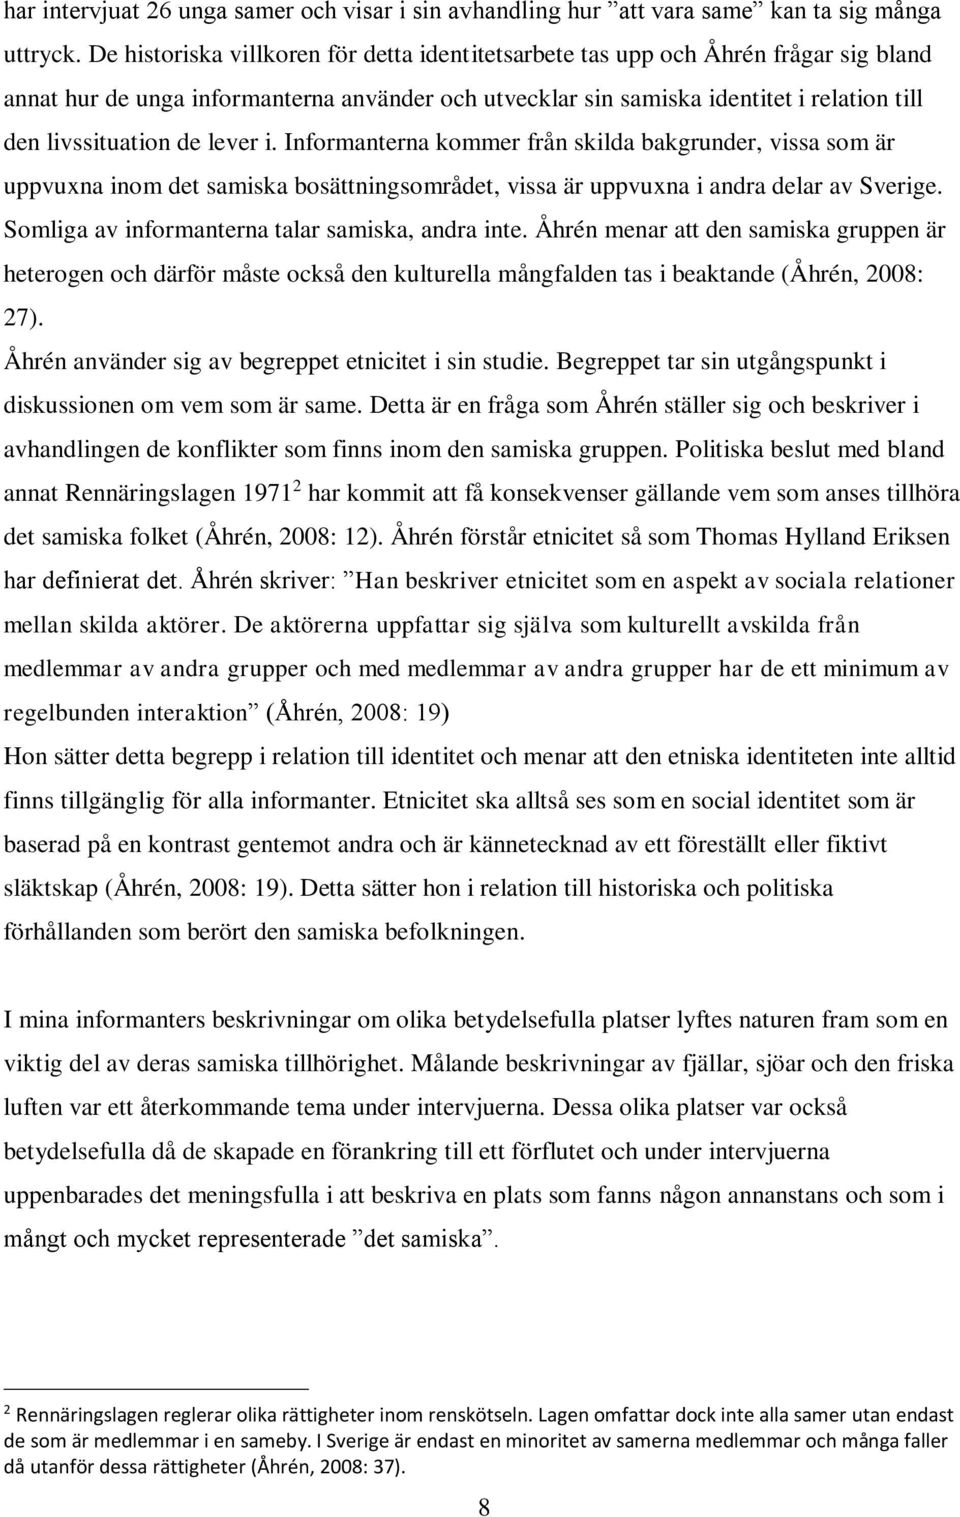 lever i. Informanterna kommer från skilda bakgrunder, vissa som är uppvuxna inom det samiska bosättningsområdet, vissa är uppvuxna i andra delar av Sverige.